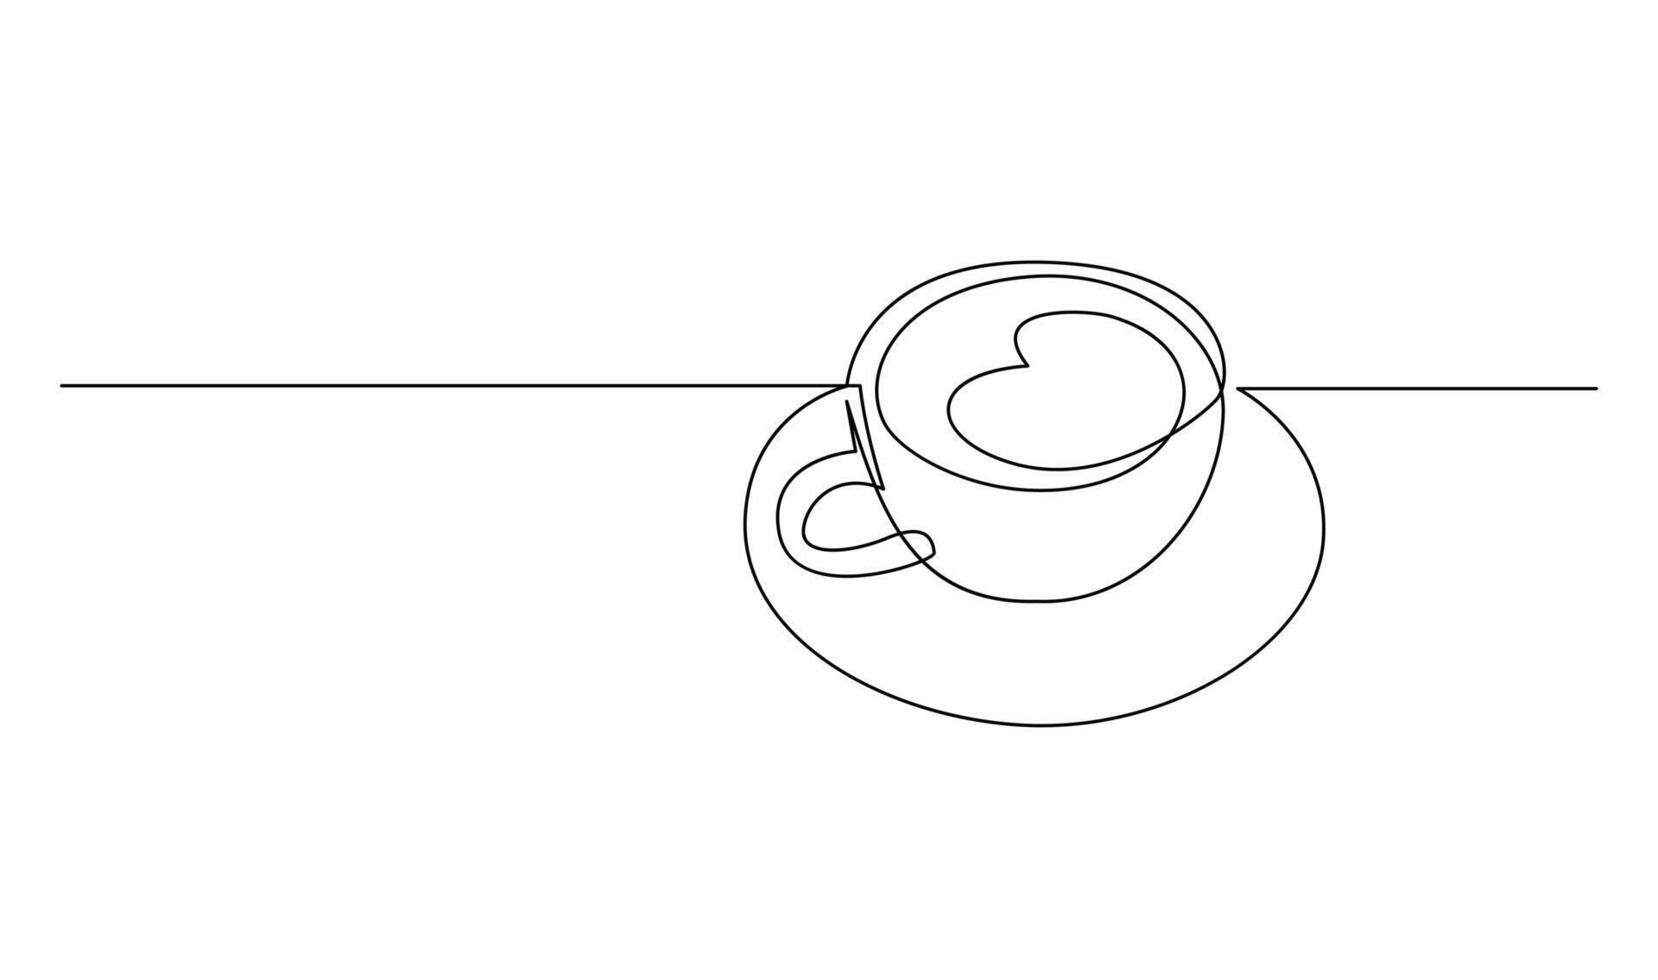 Tasse kontinuierlich Linie Kunst. Kaffee oder Tee Tasse einer Linie Zeichnung. heiß trinken mit Dampf vektor